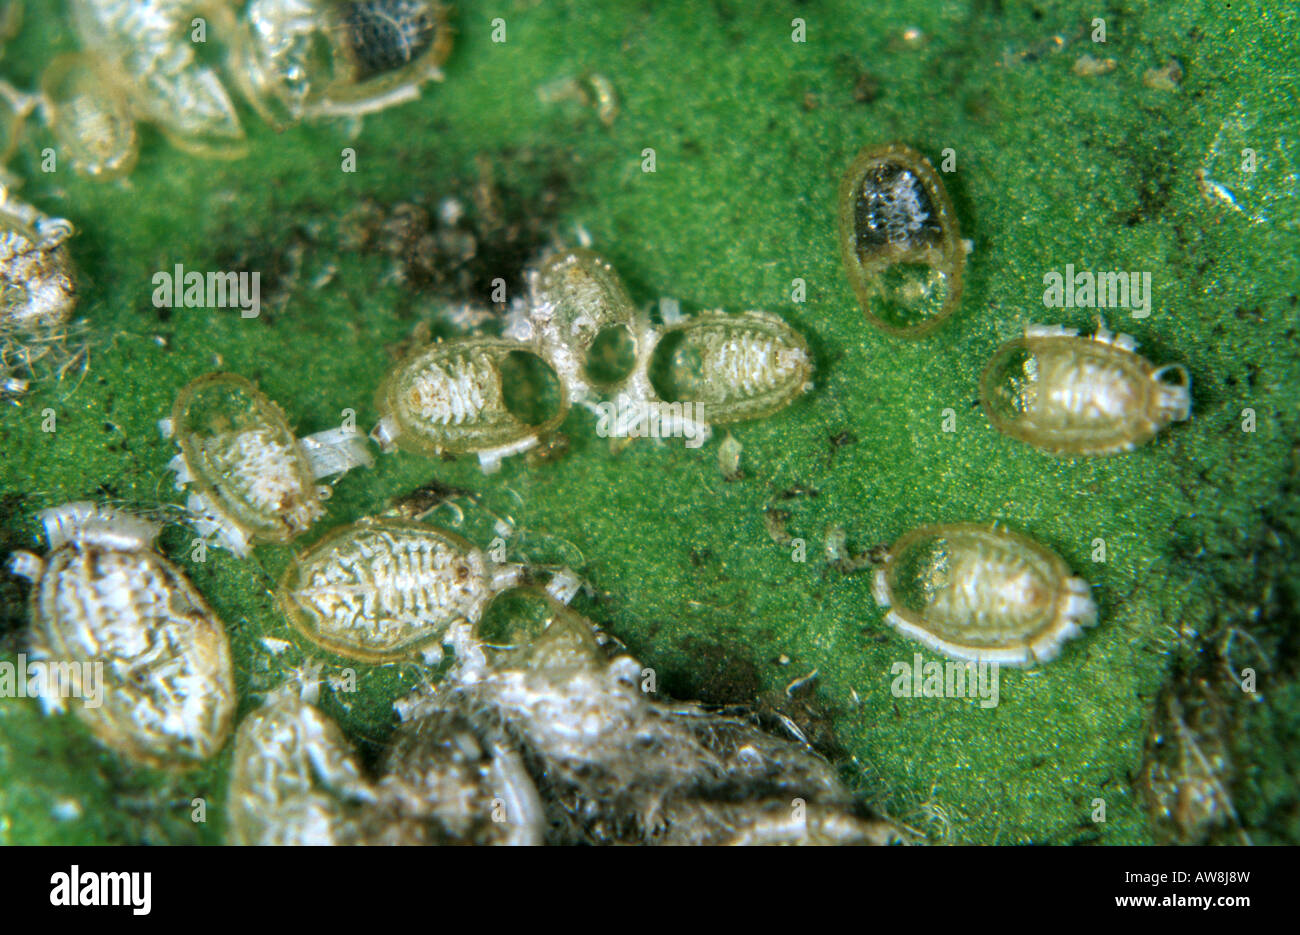 Orificios de salida de una avispa parasitoide Cales noecki posiblemente de mosca blanca Aleurothrixus floccosus cítricos Foto de stock